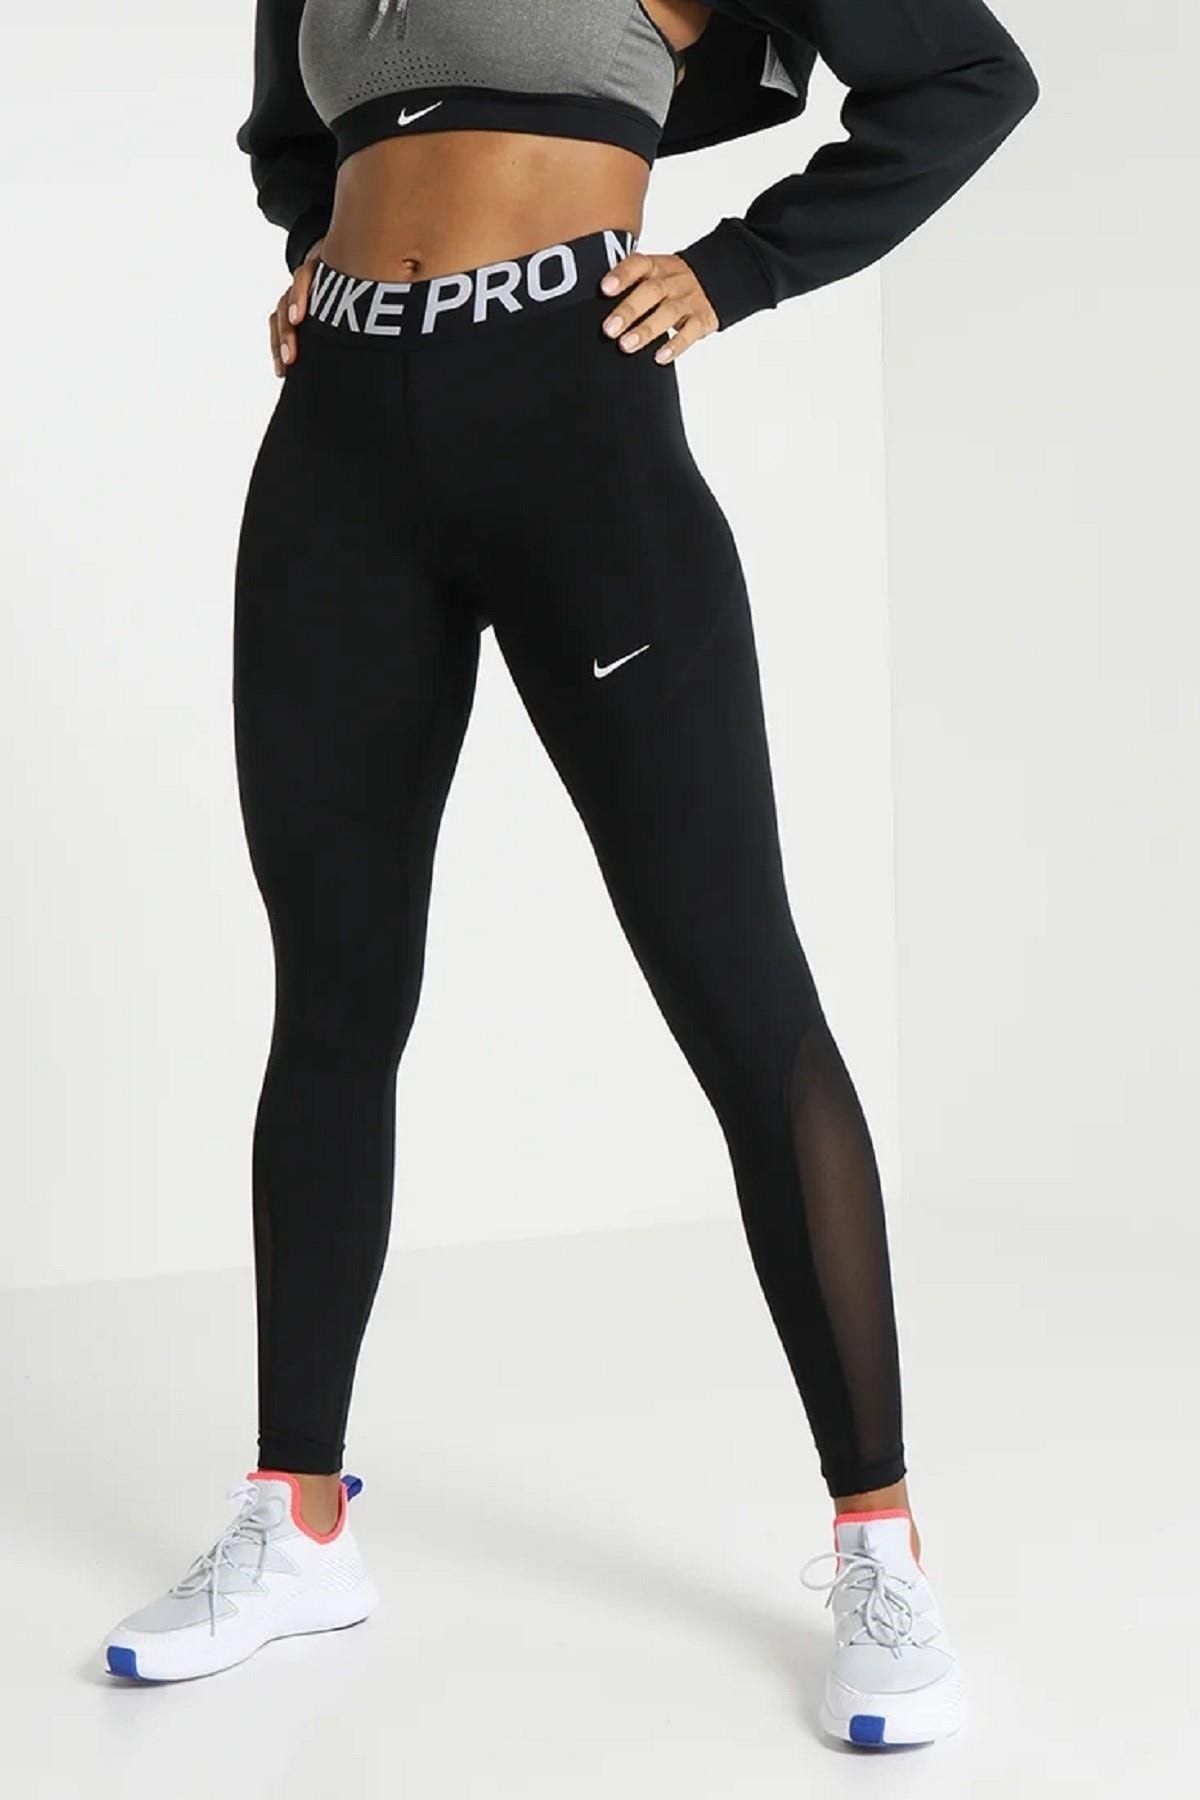 Nike Pro Metallic Kadın Tayt Fiyatı - Taksit Seçenekleri